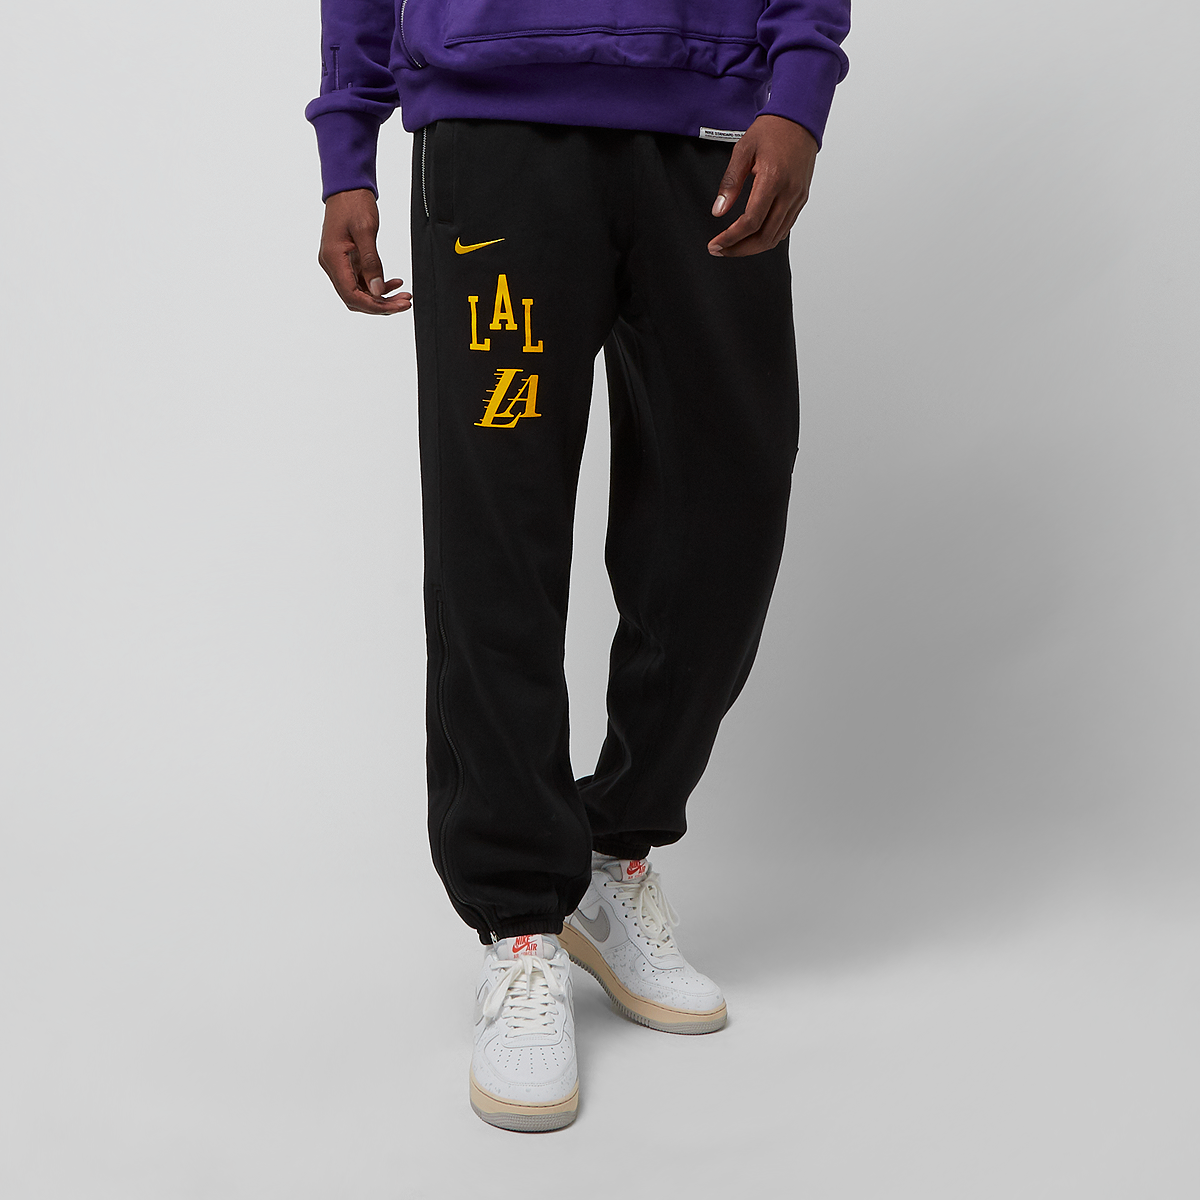 Nike Los Angeles Lakers Standard Issue City Edition Pants Trainingsbroeken Heren black maat: S beschikbare maaten:S